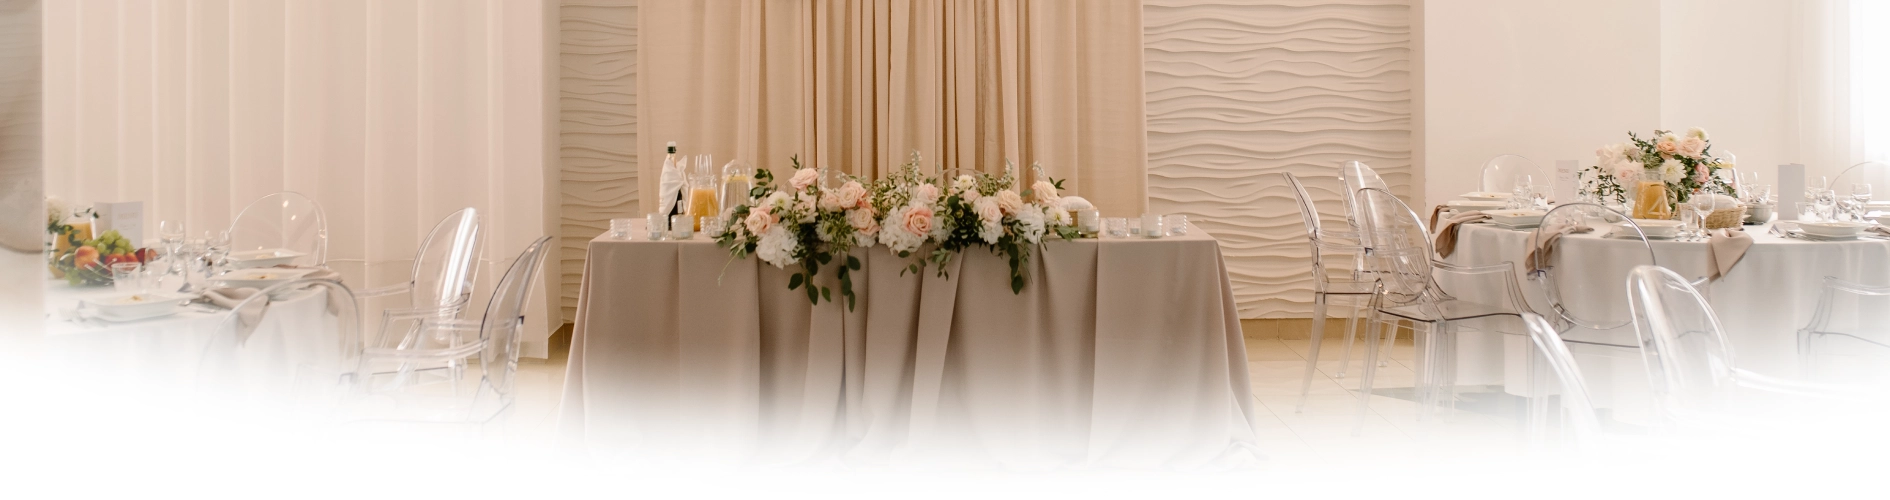 Udekorowane stoły weselne